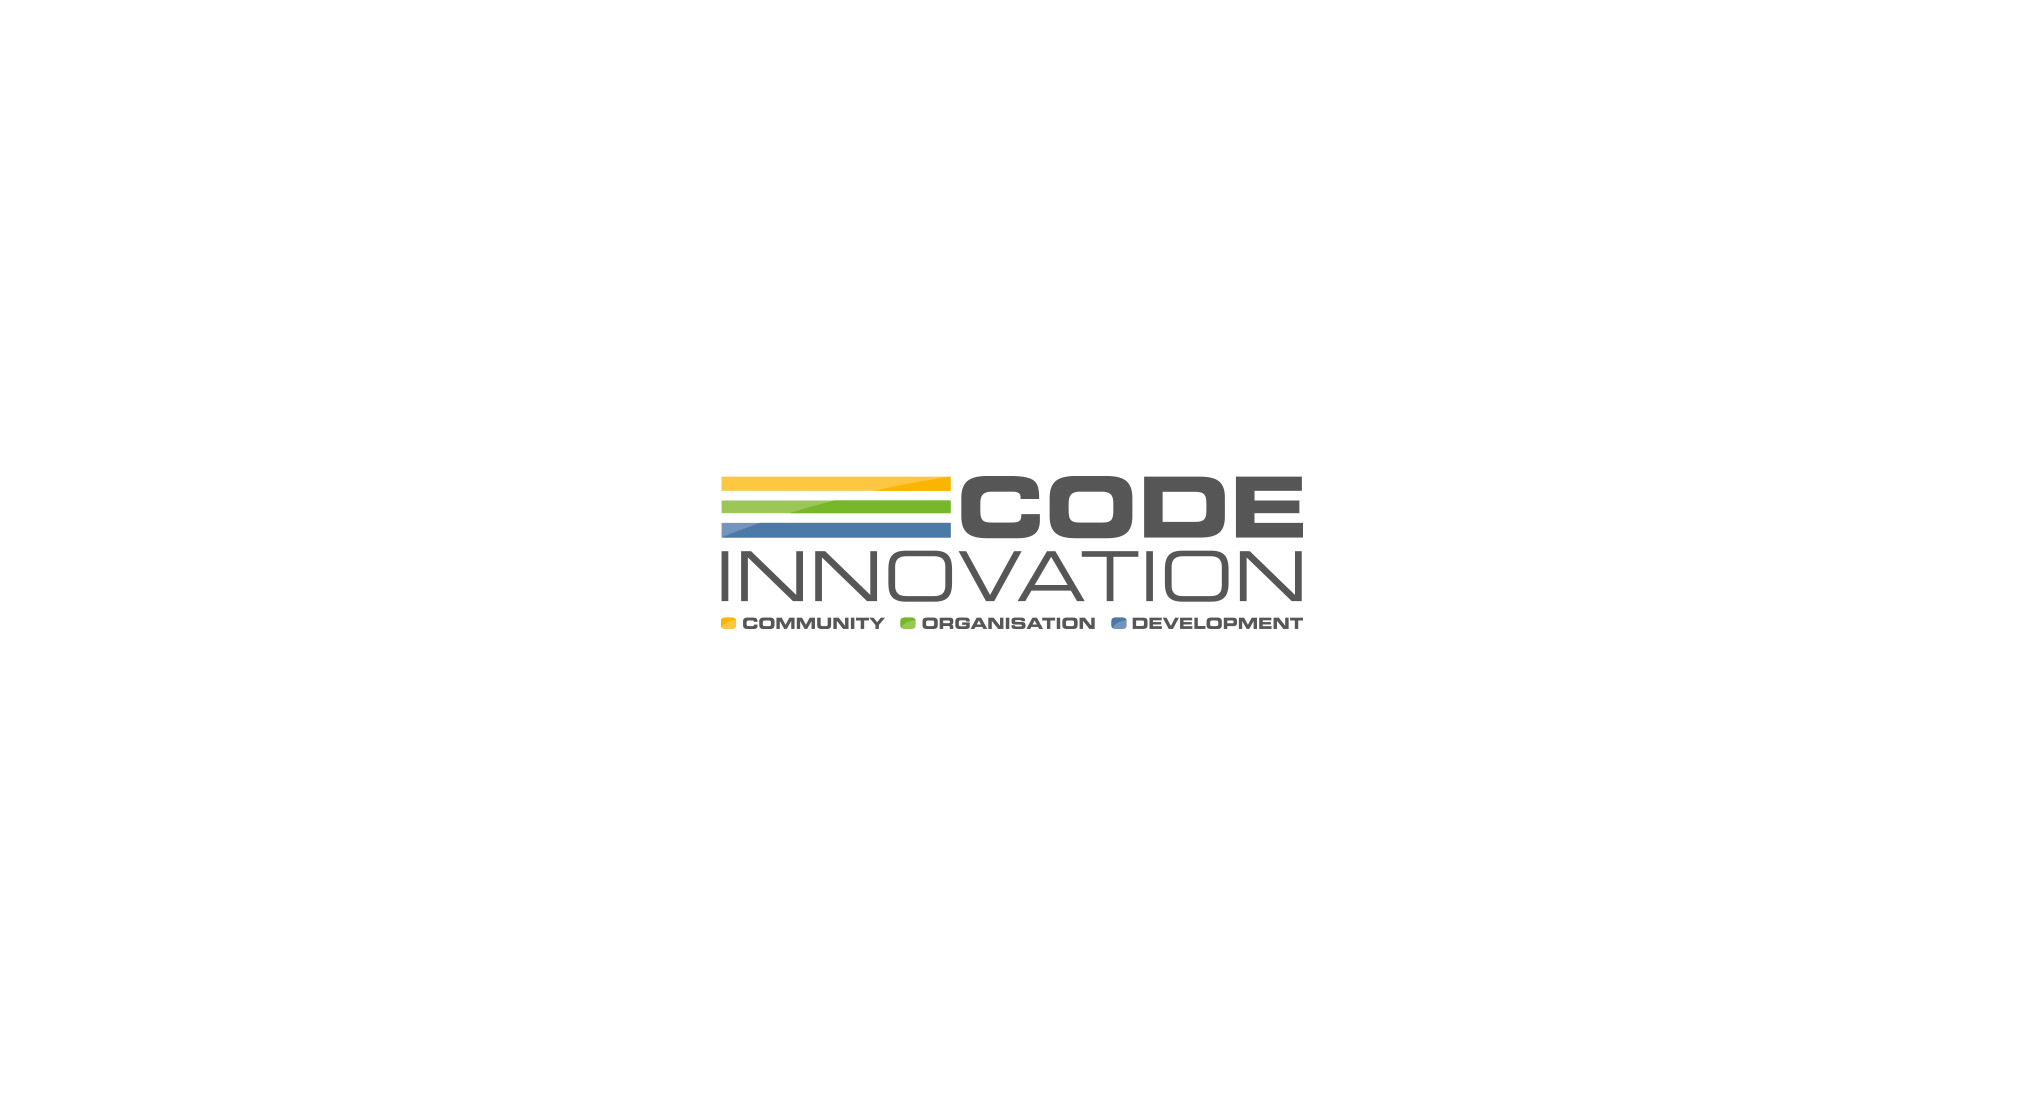 Code Innovation, Community, Organisation, Development, technischer Schriftzug mit 3 farbigen Balken